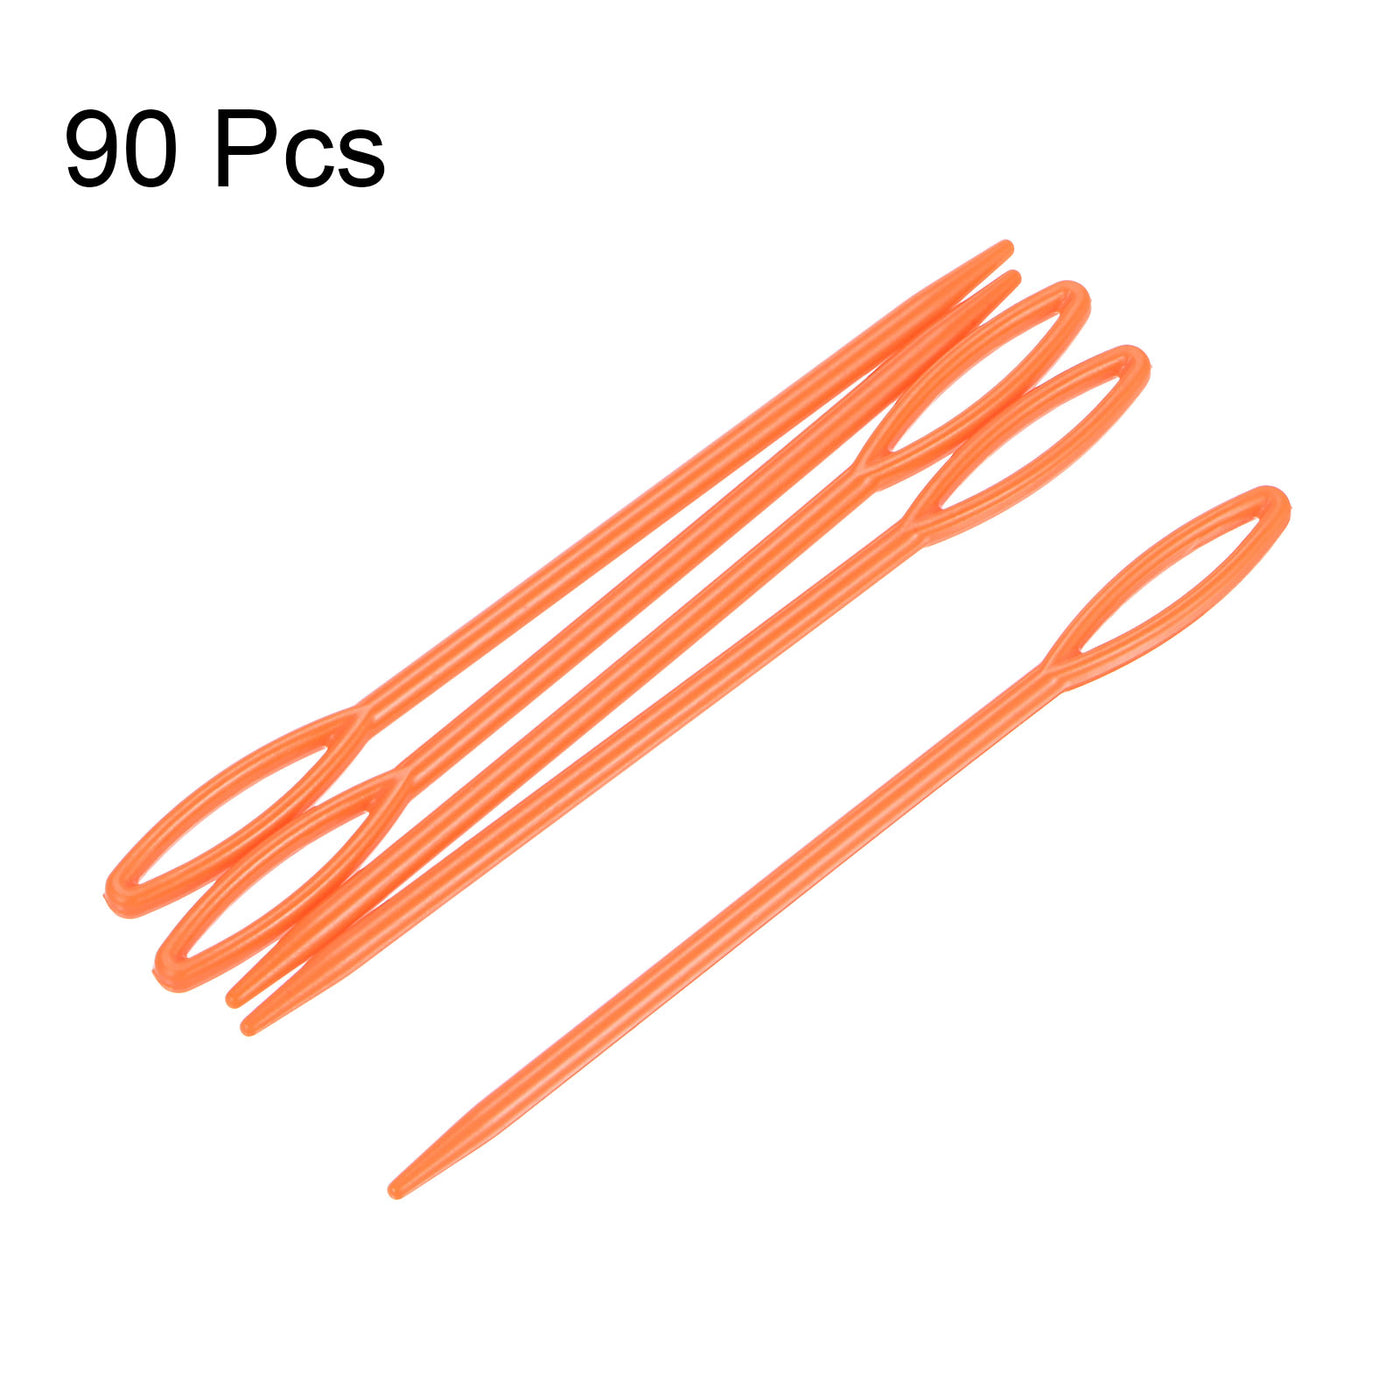 Harfington 90pcs Plastic Sewing Needles, 9cm Large Eye Blunt Learning Needles, Orange